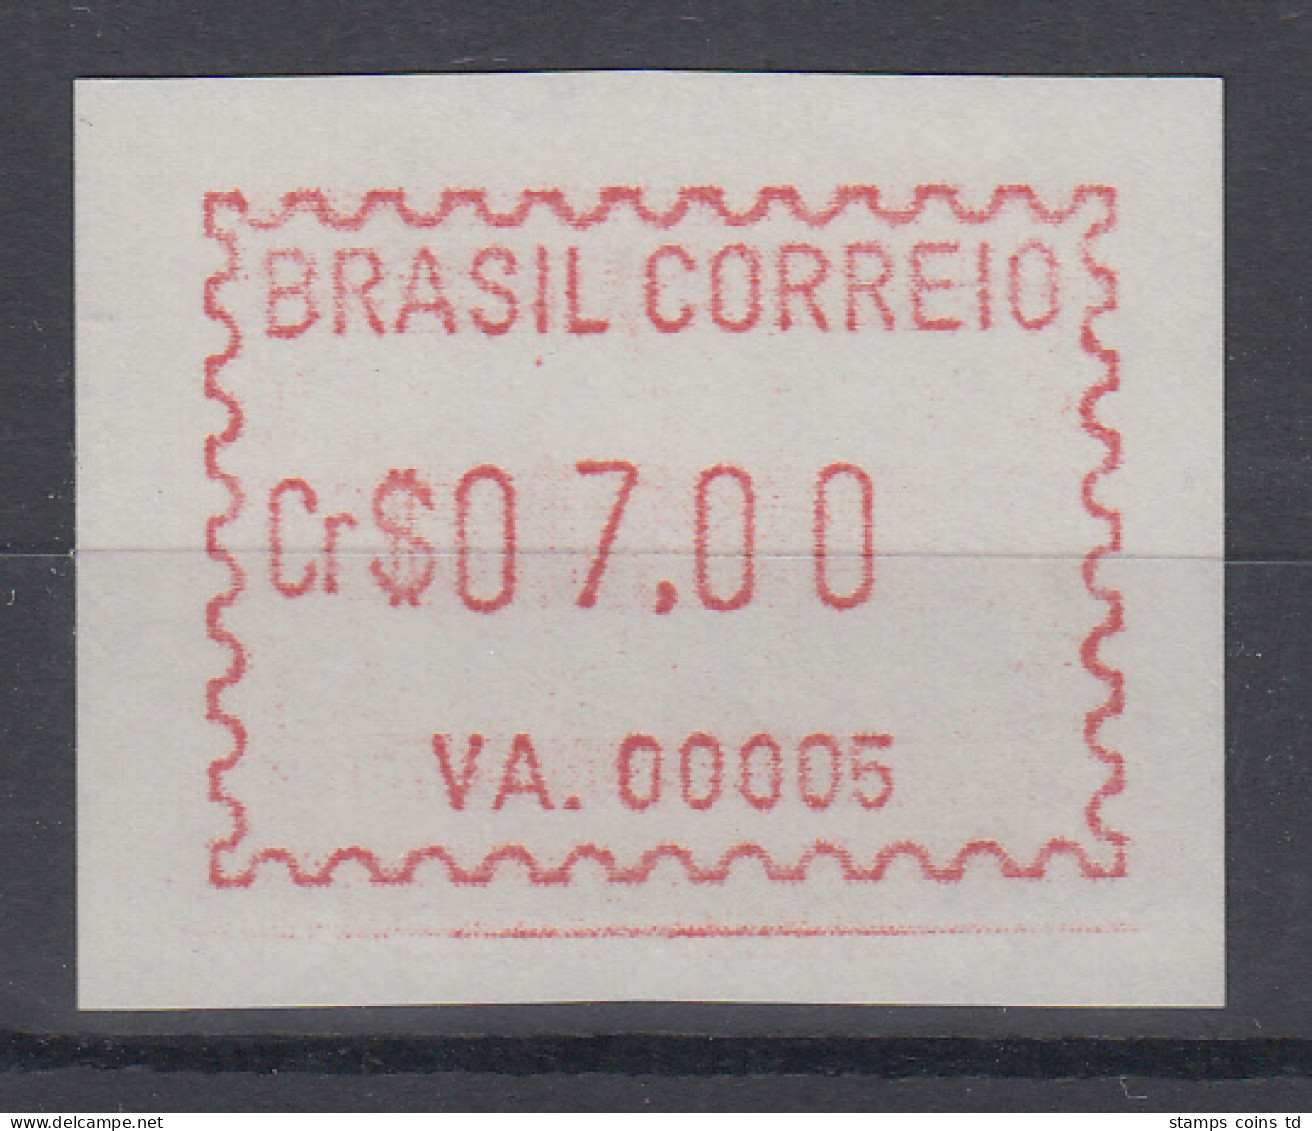 Brasilien FRAMA-ATM VA.00005, Wert 07,00 Cr$, Von VS **  - Frankeervignetten (Frama)